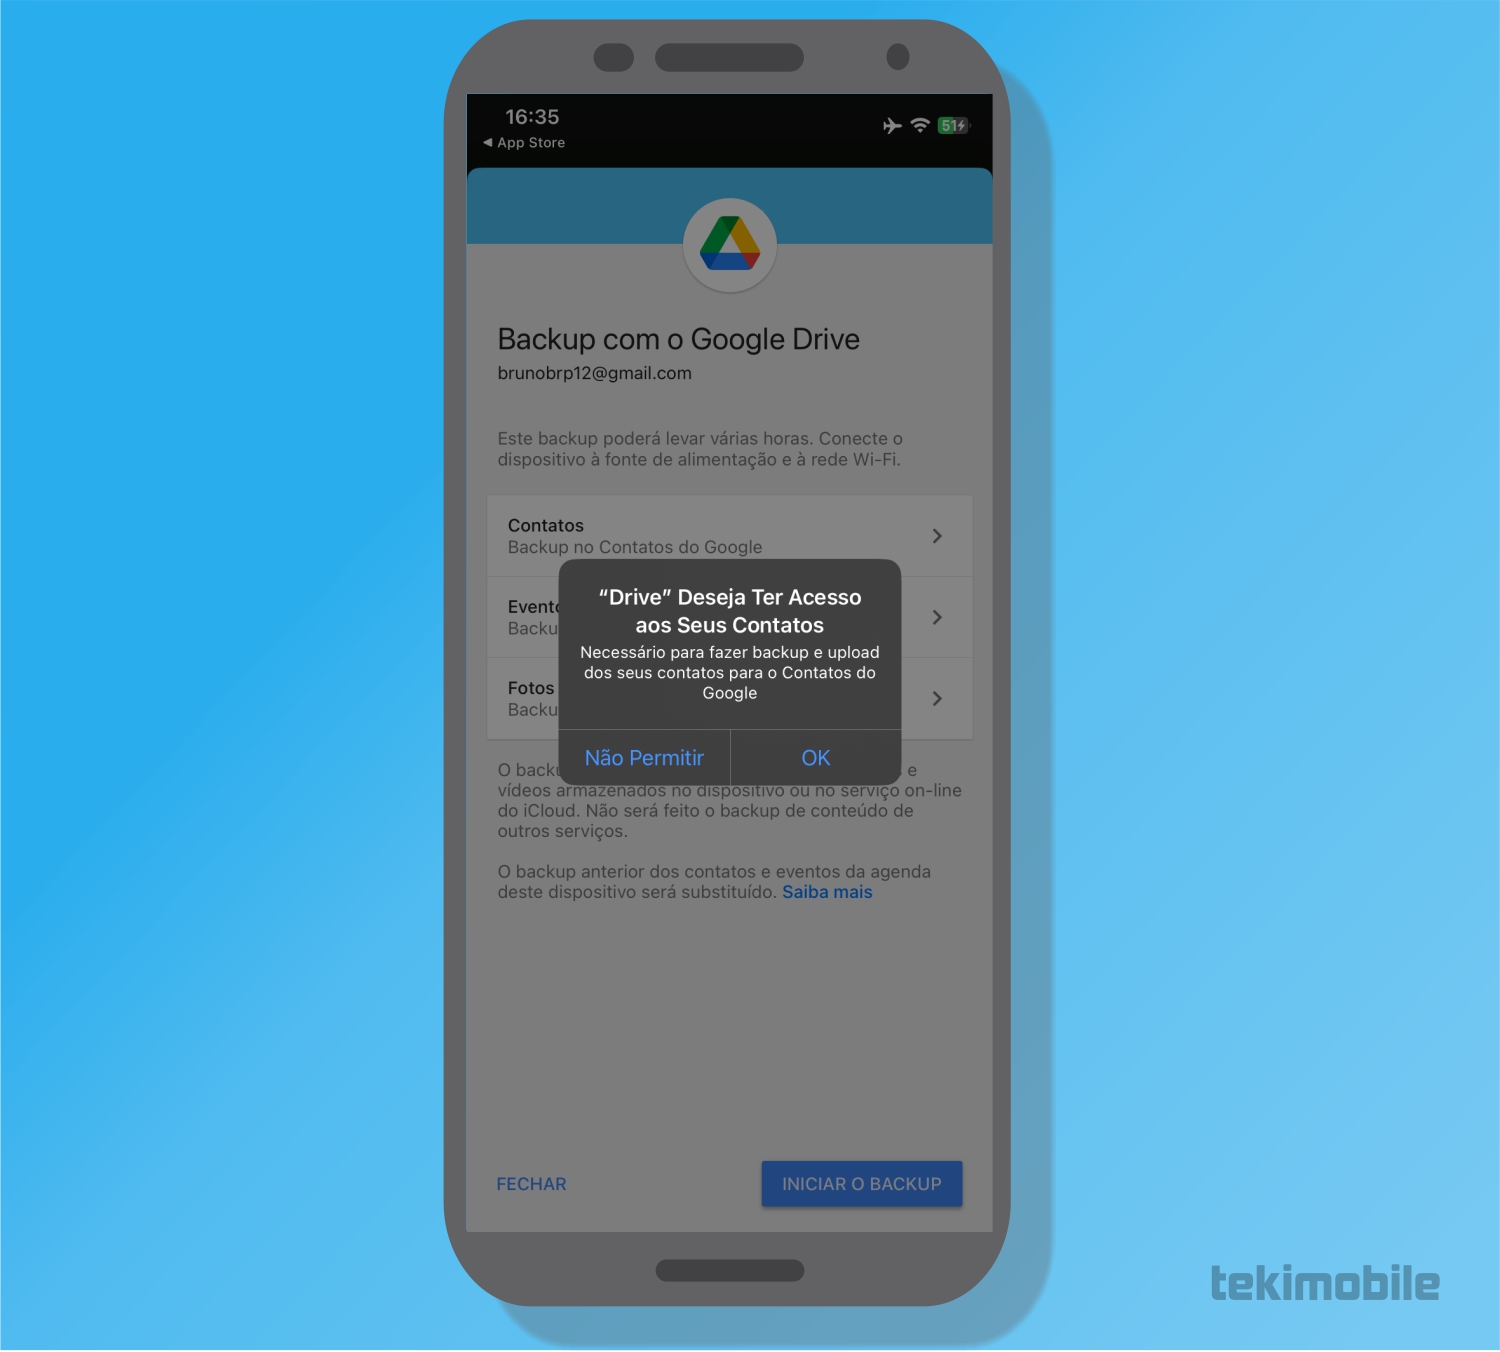 Toque em OK - Como fazer backup do iPhone no Google Drive